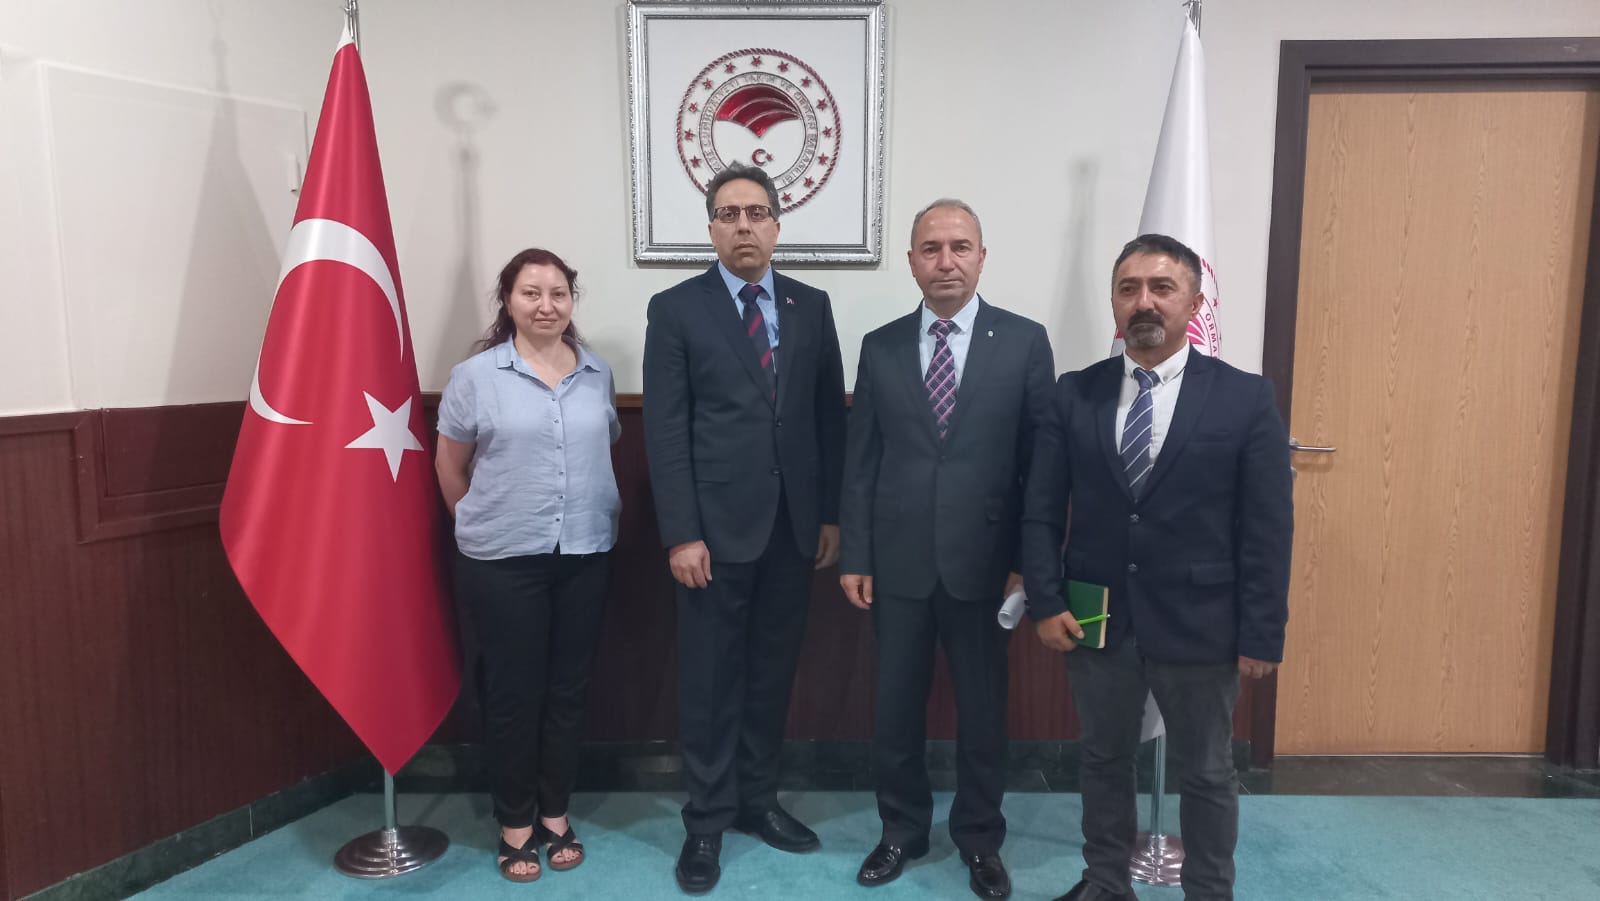 Tarım ve Orman Bakan Yardımcısı Prof. Dr. Ahmet GÜMEN ile görüştük.